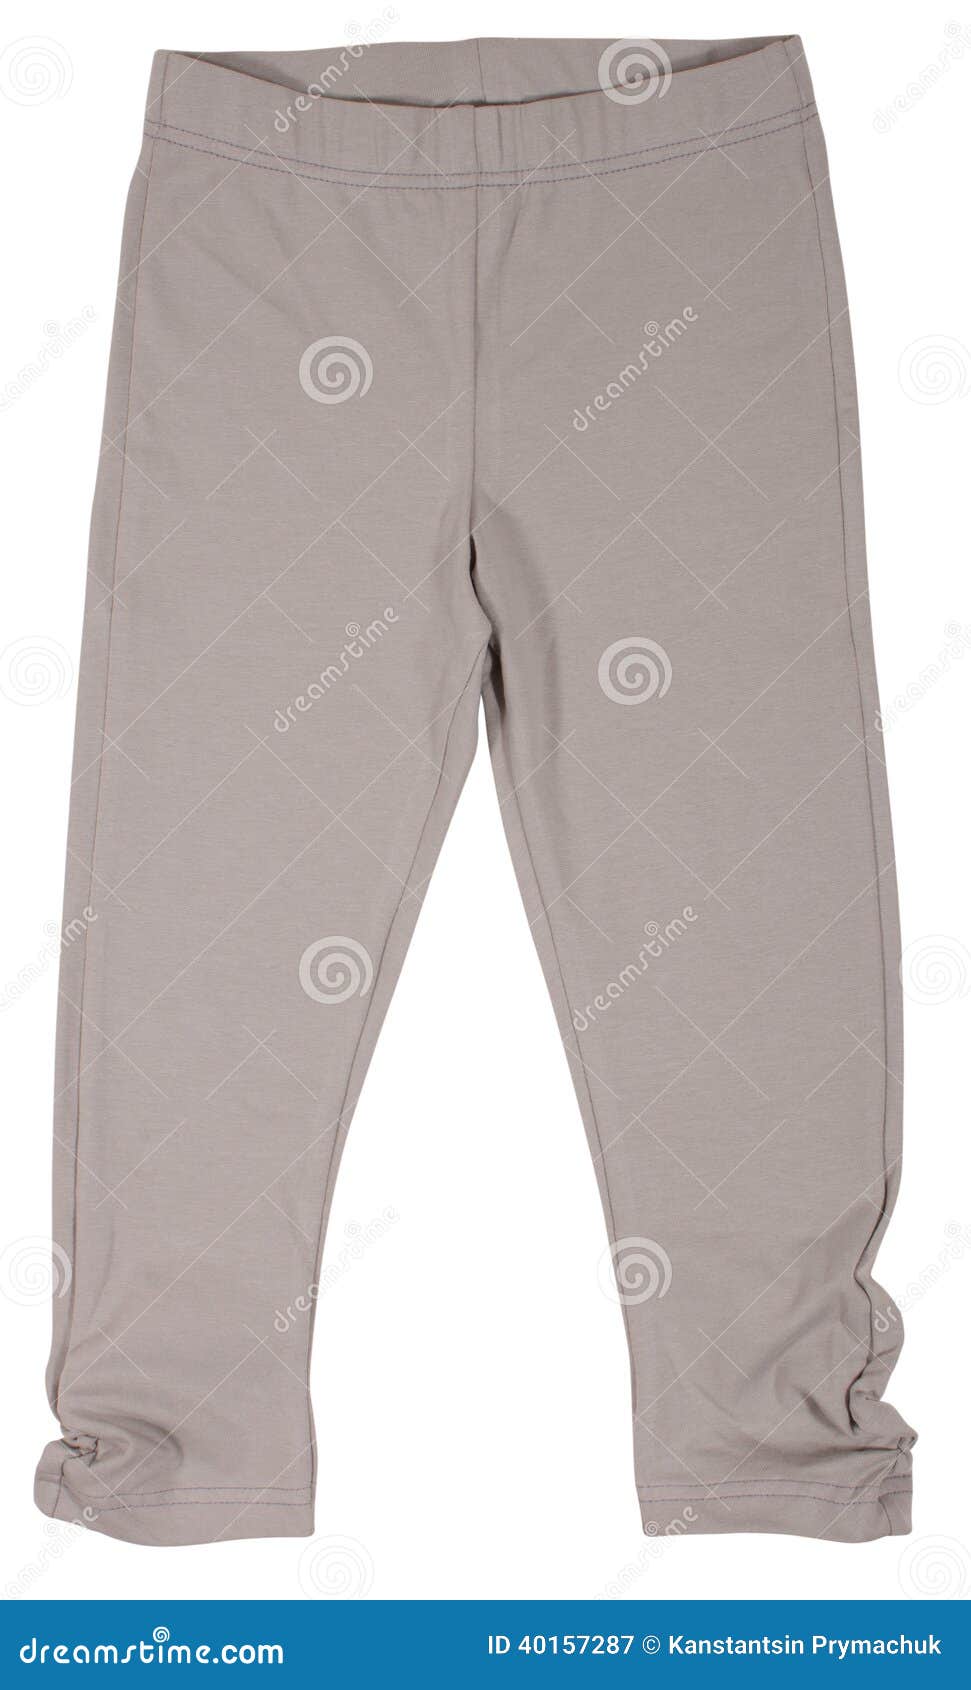 Sweatpants Isolated on White Background Stock Image - Image of gray ...